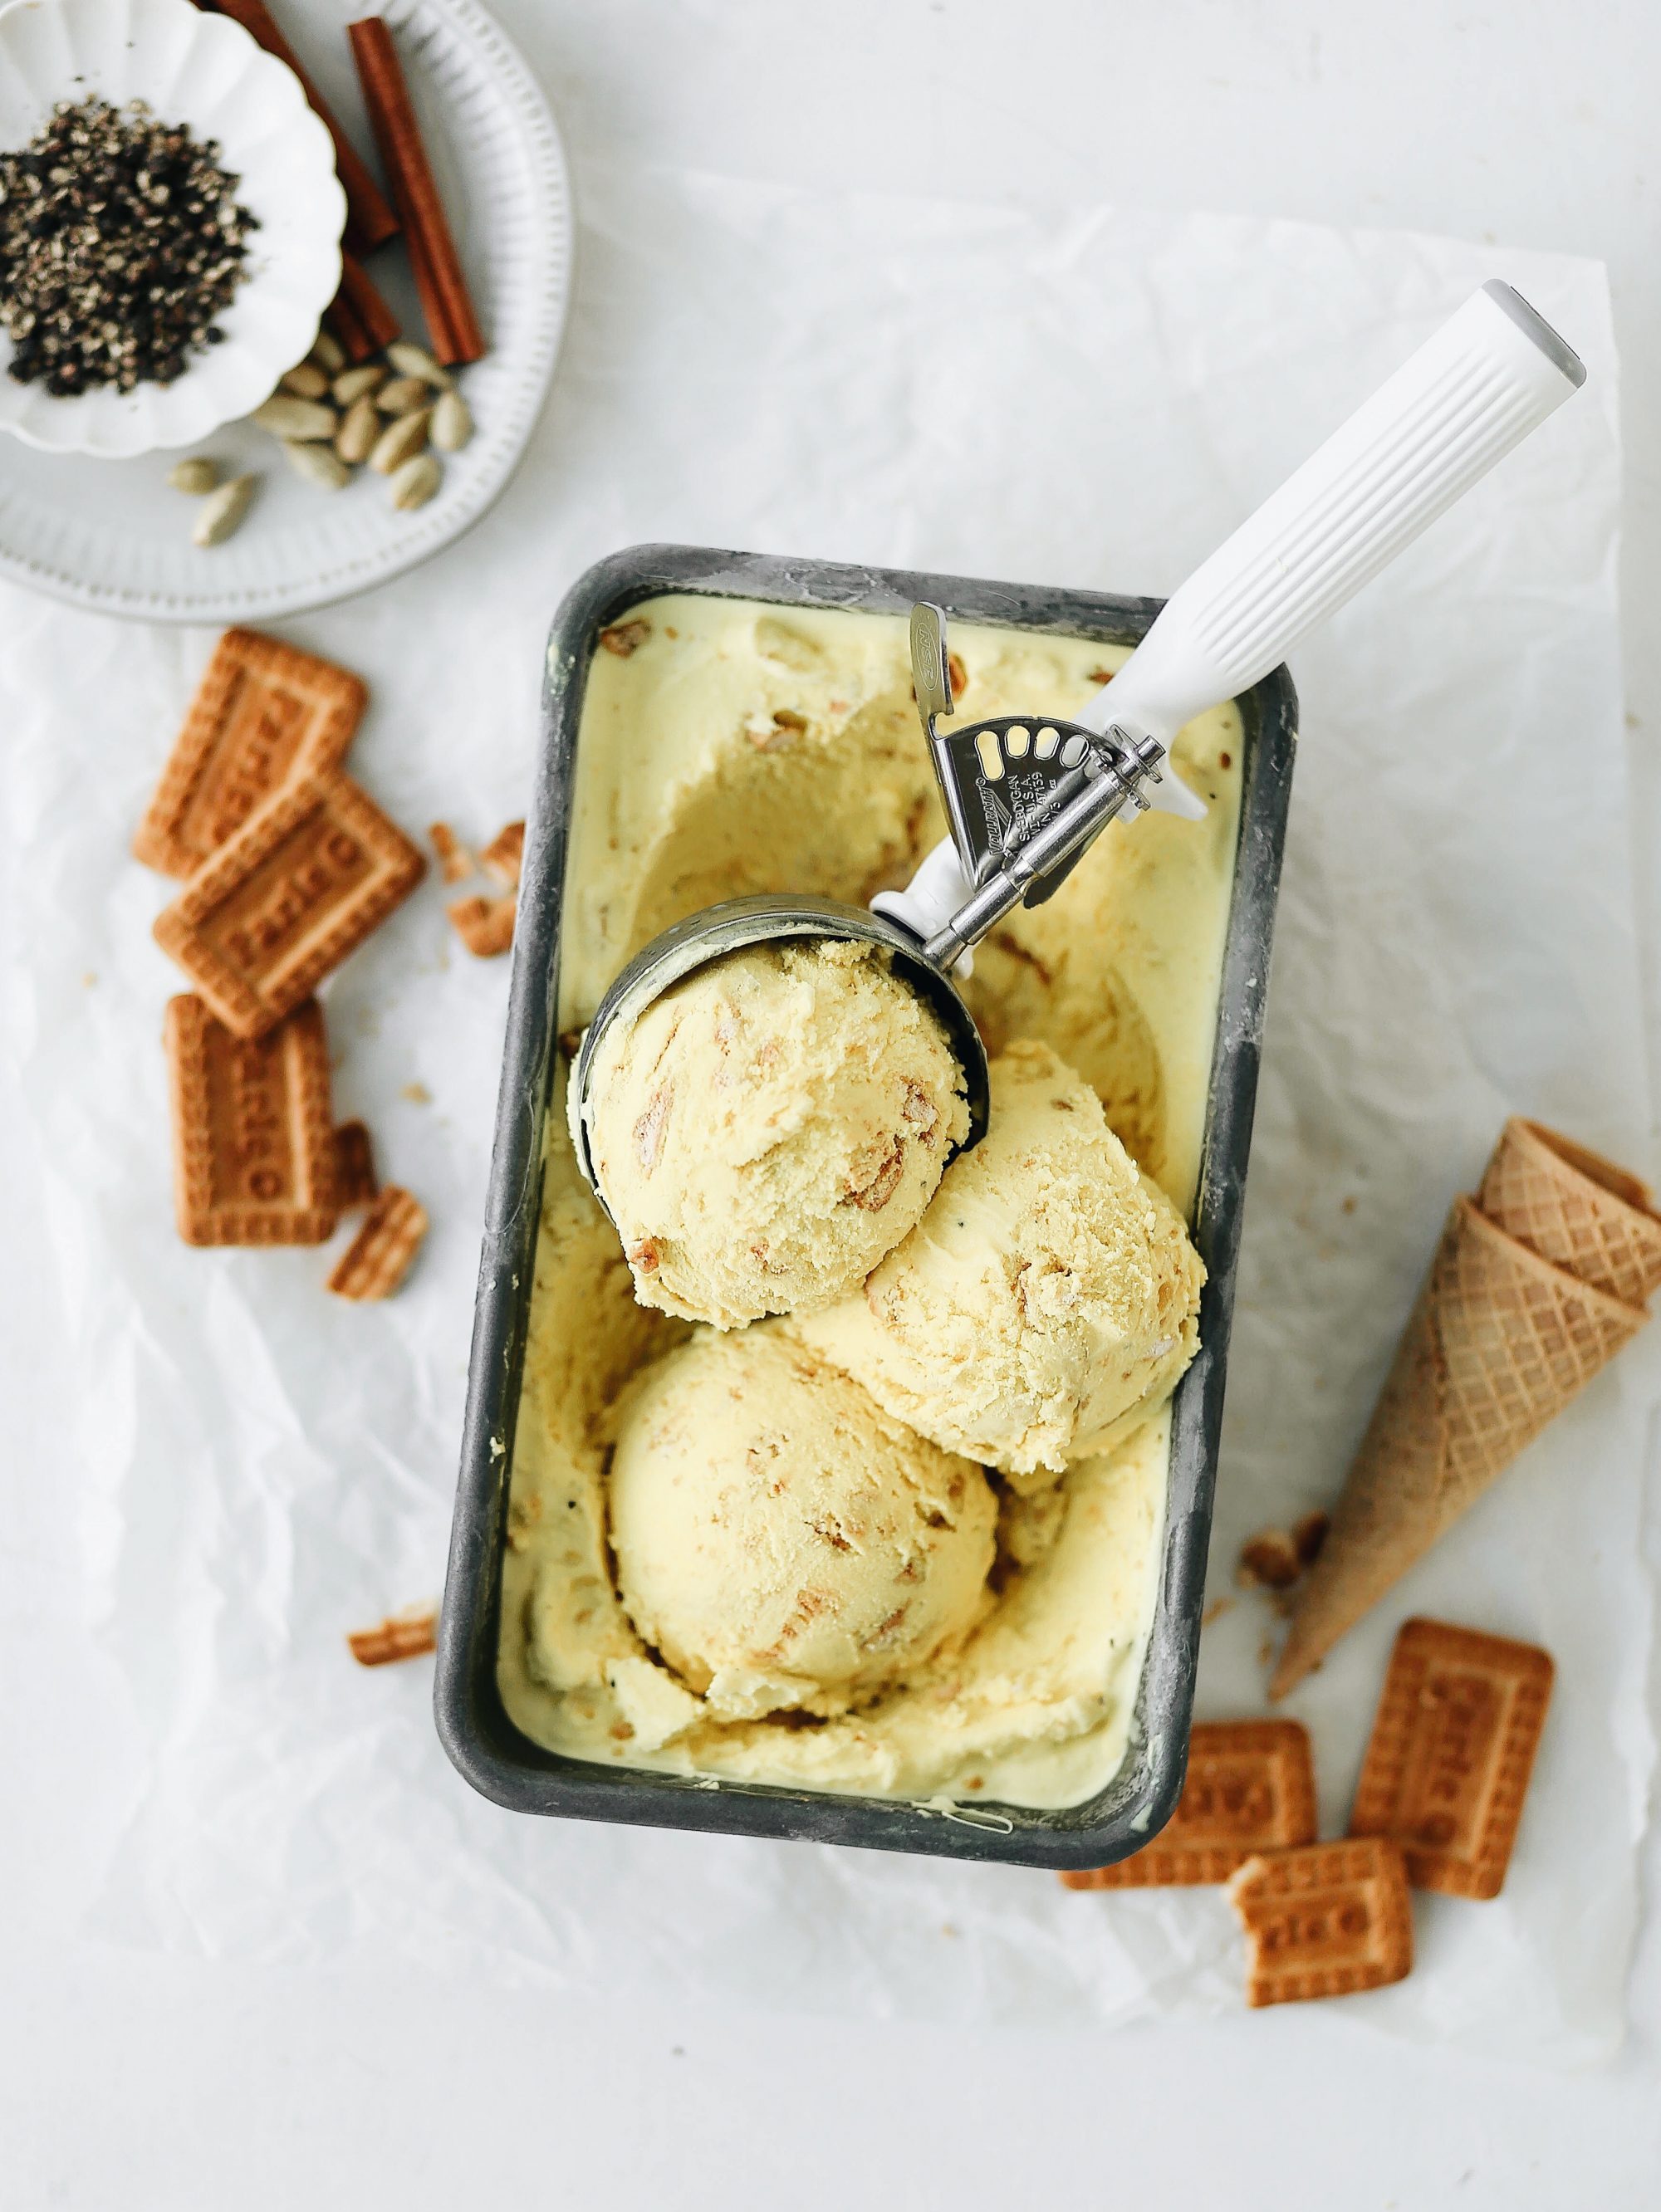 haldhi doodh ice cream, your favorite golden milk latte in an ice cream!, Turmeric Recipes